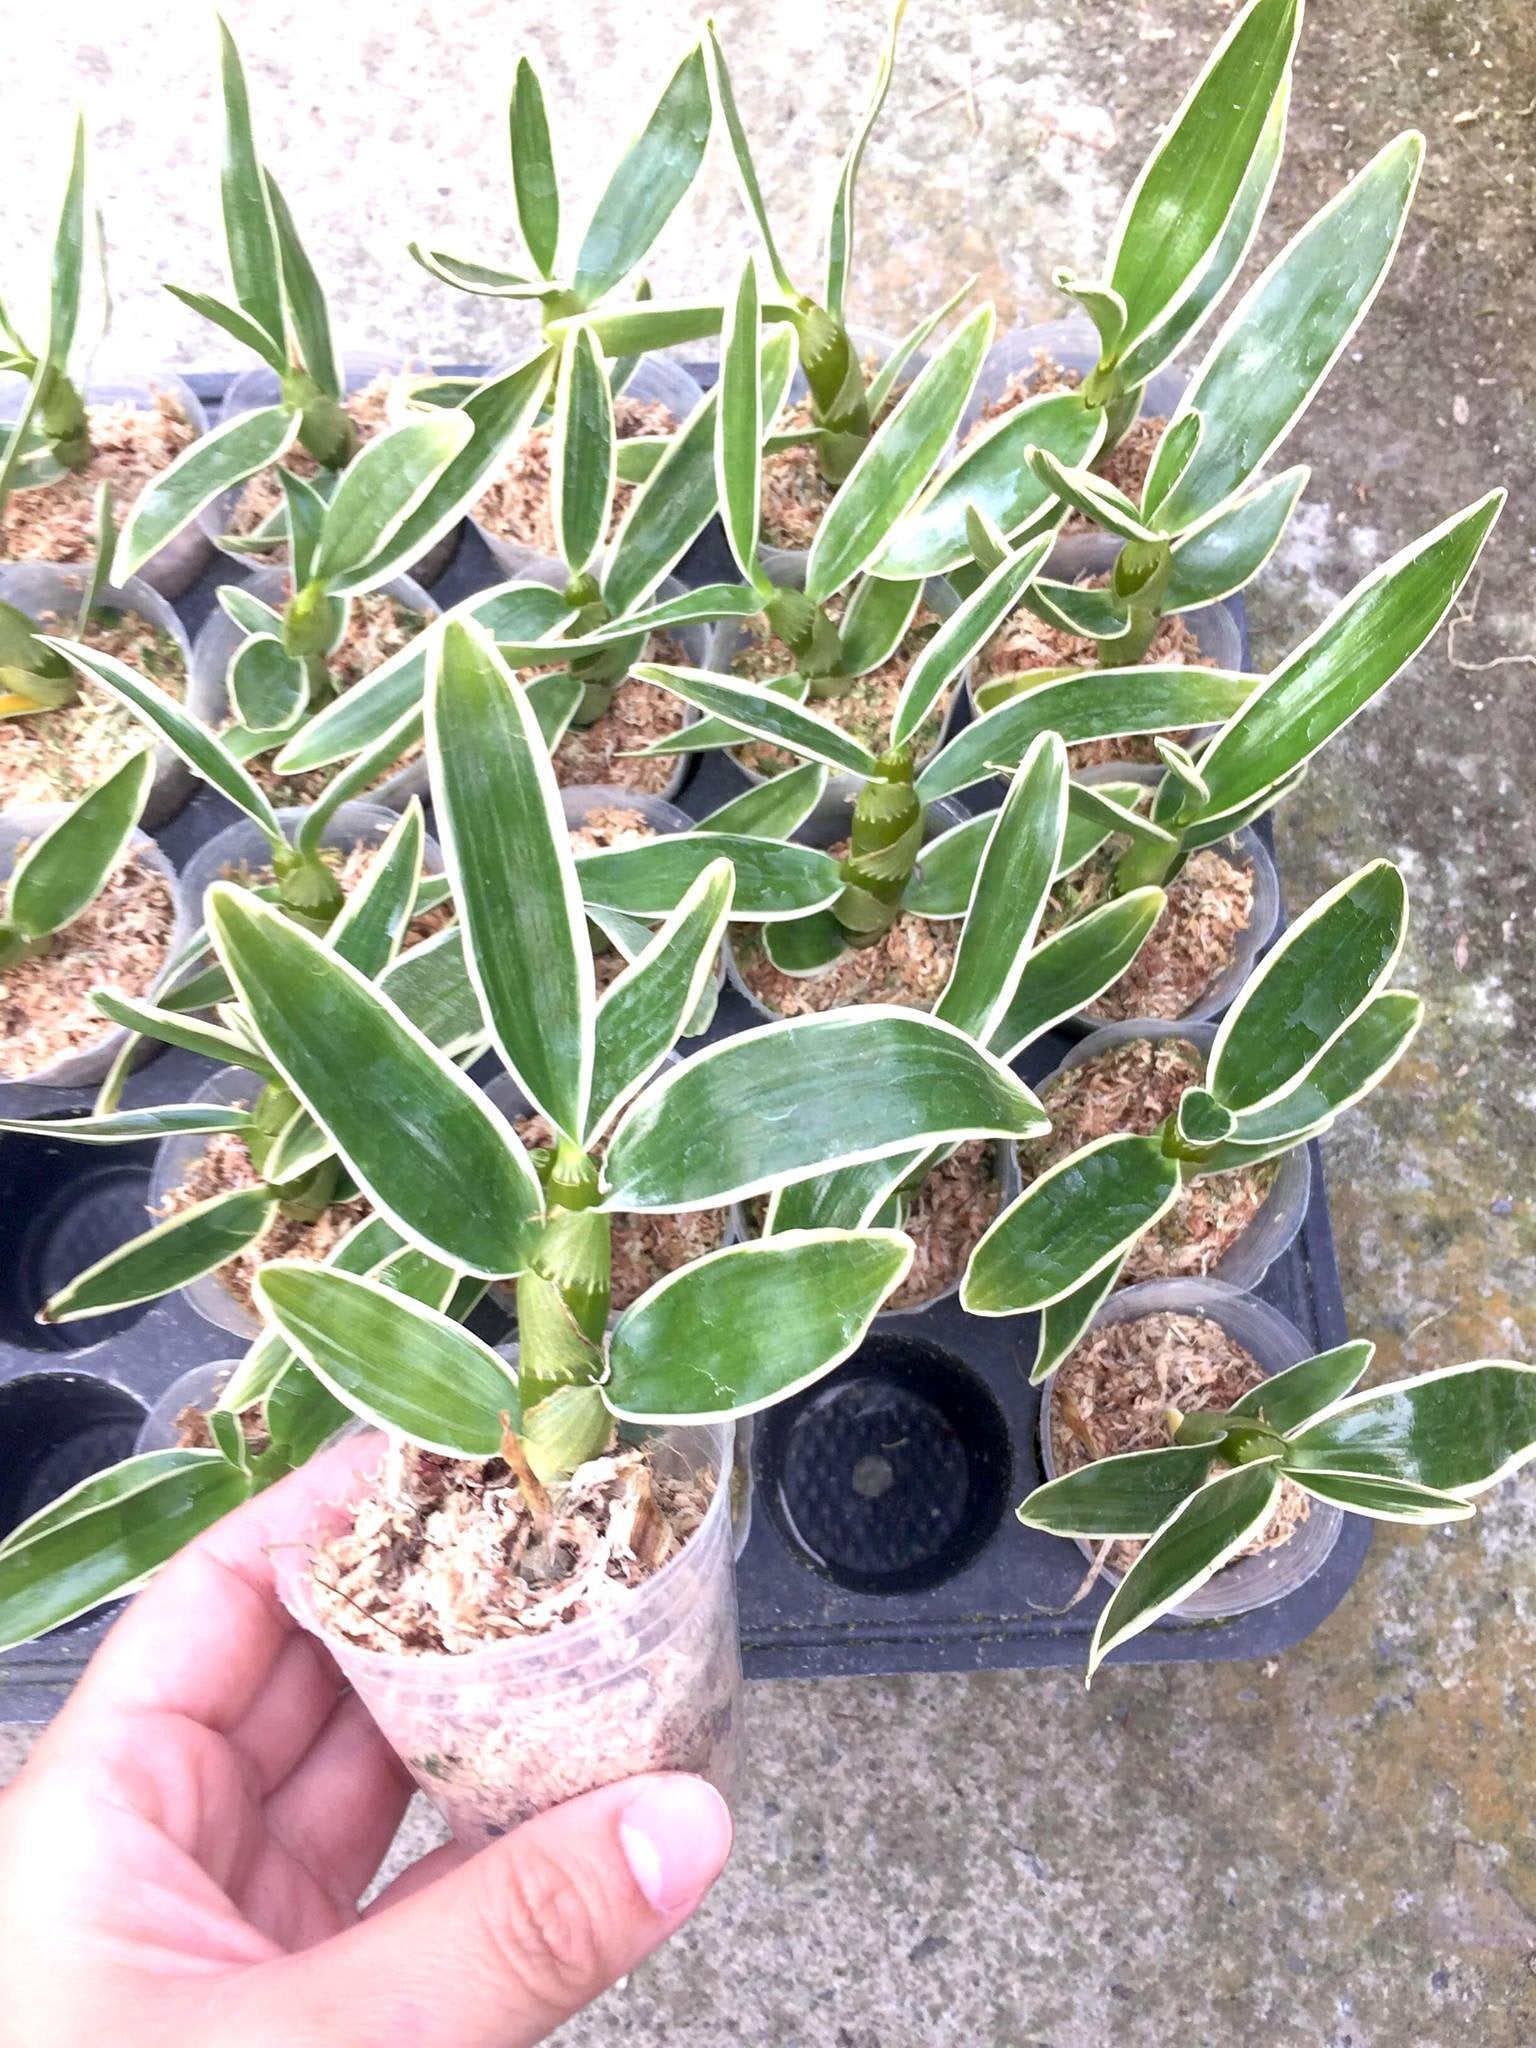 Dendrobium nobile "Variegata"